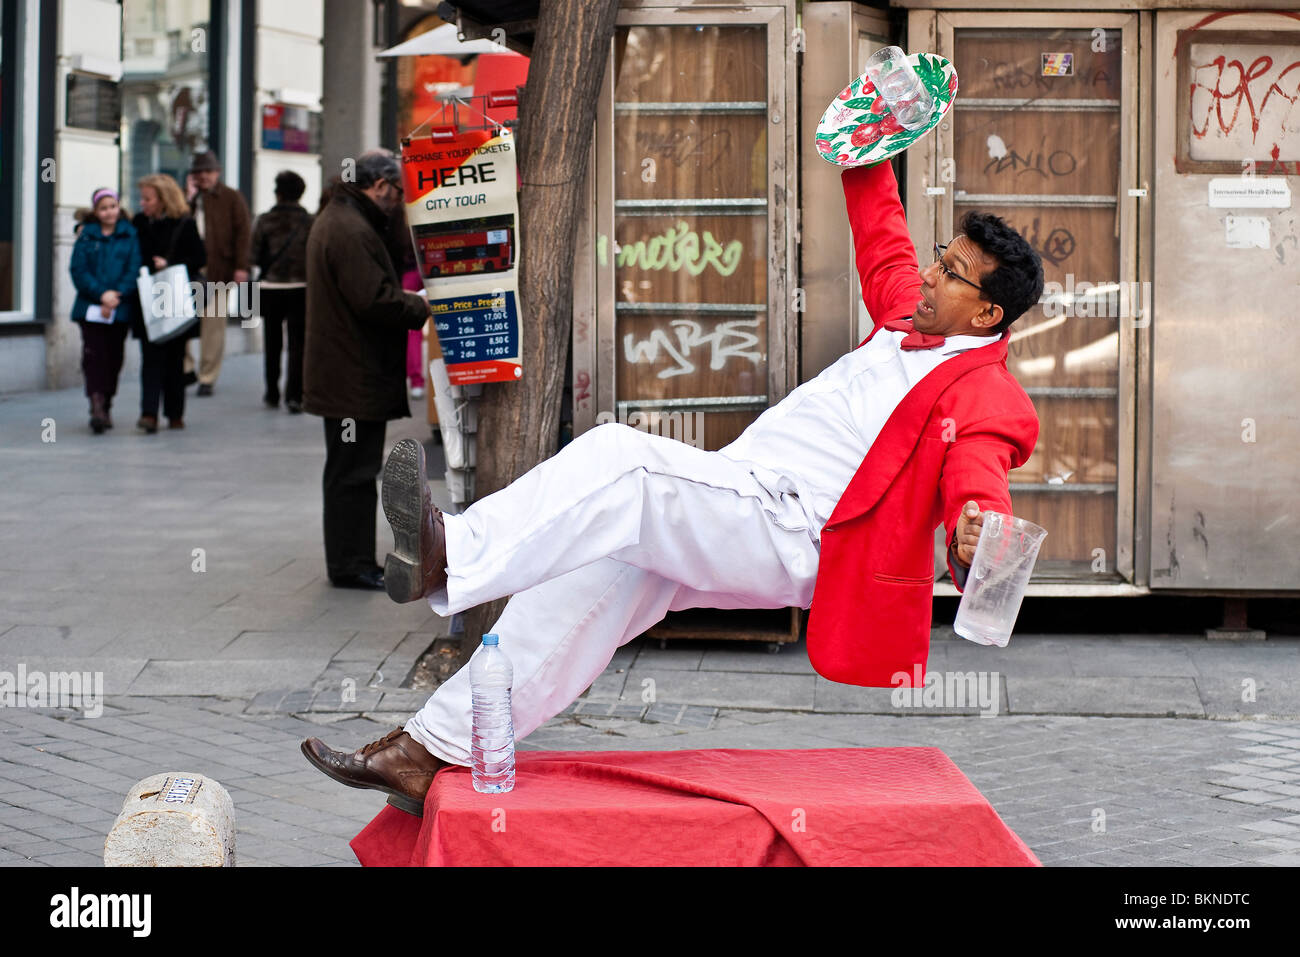 Serveur entrant street performer, Madrid, Espagne Banque D'Images